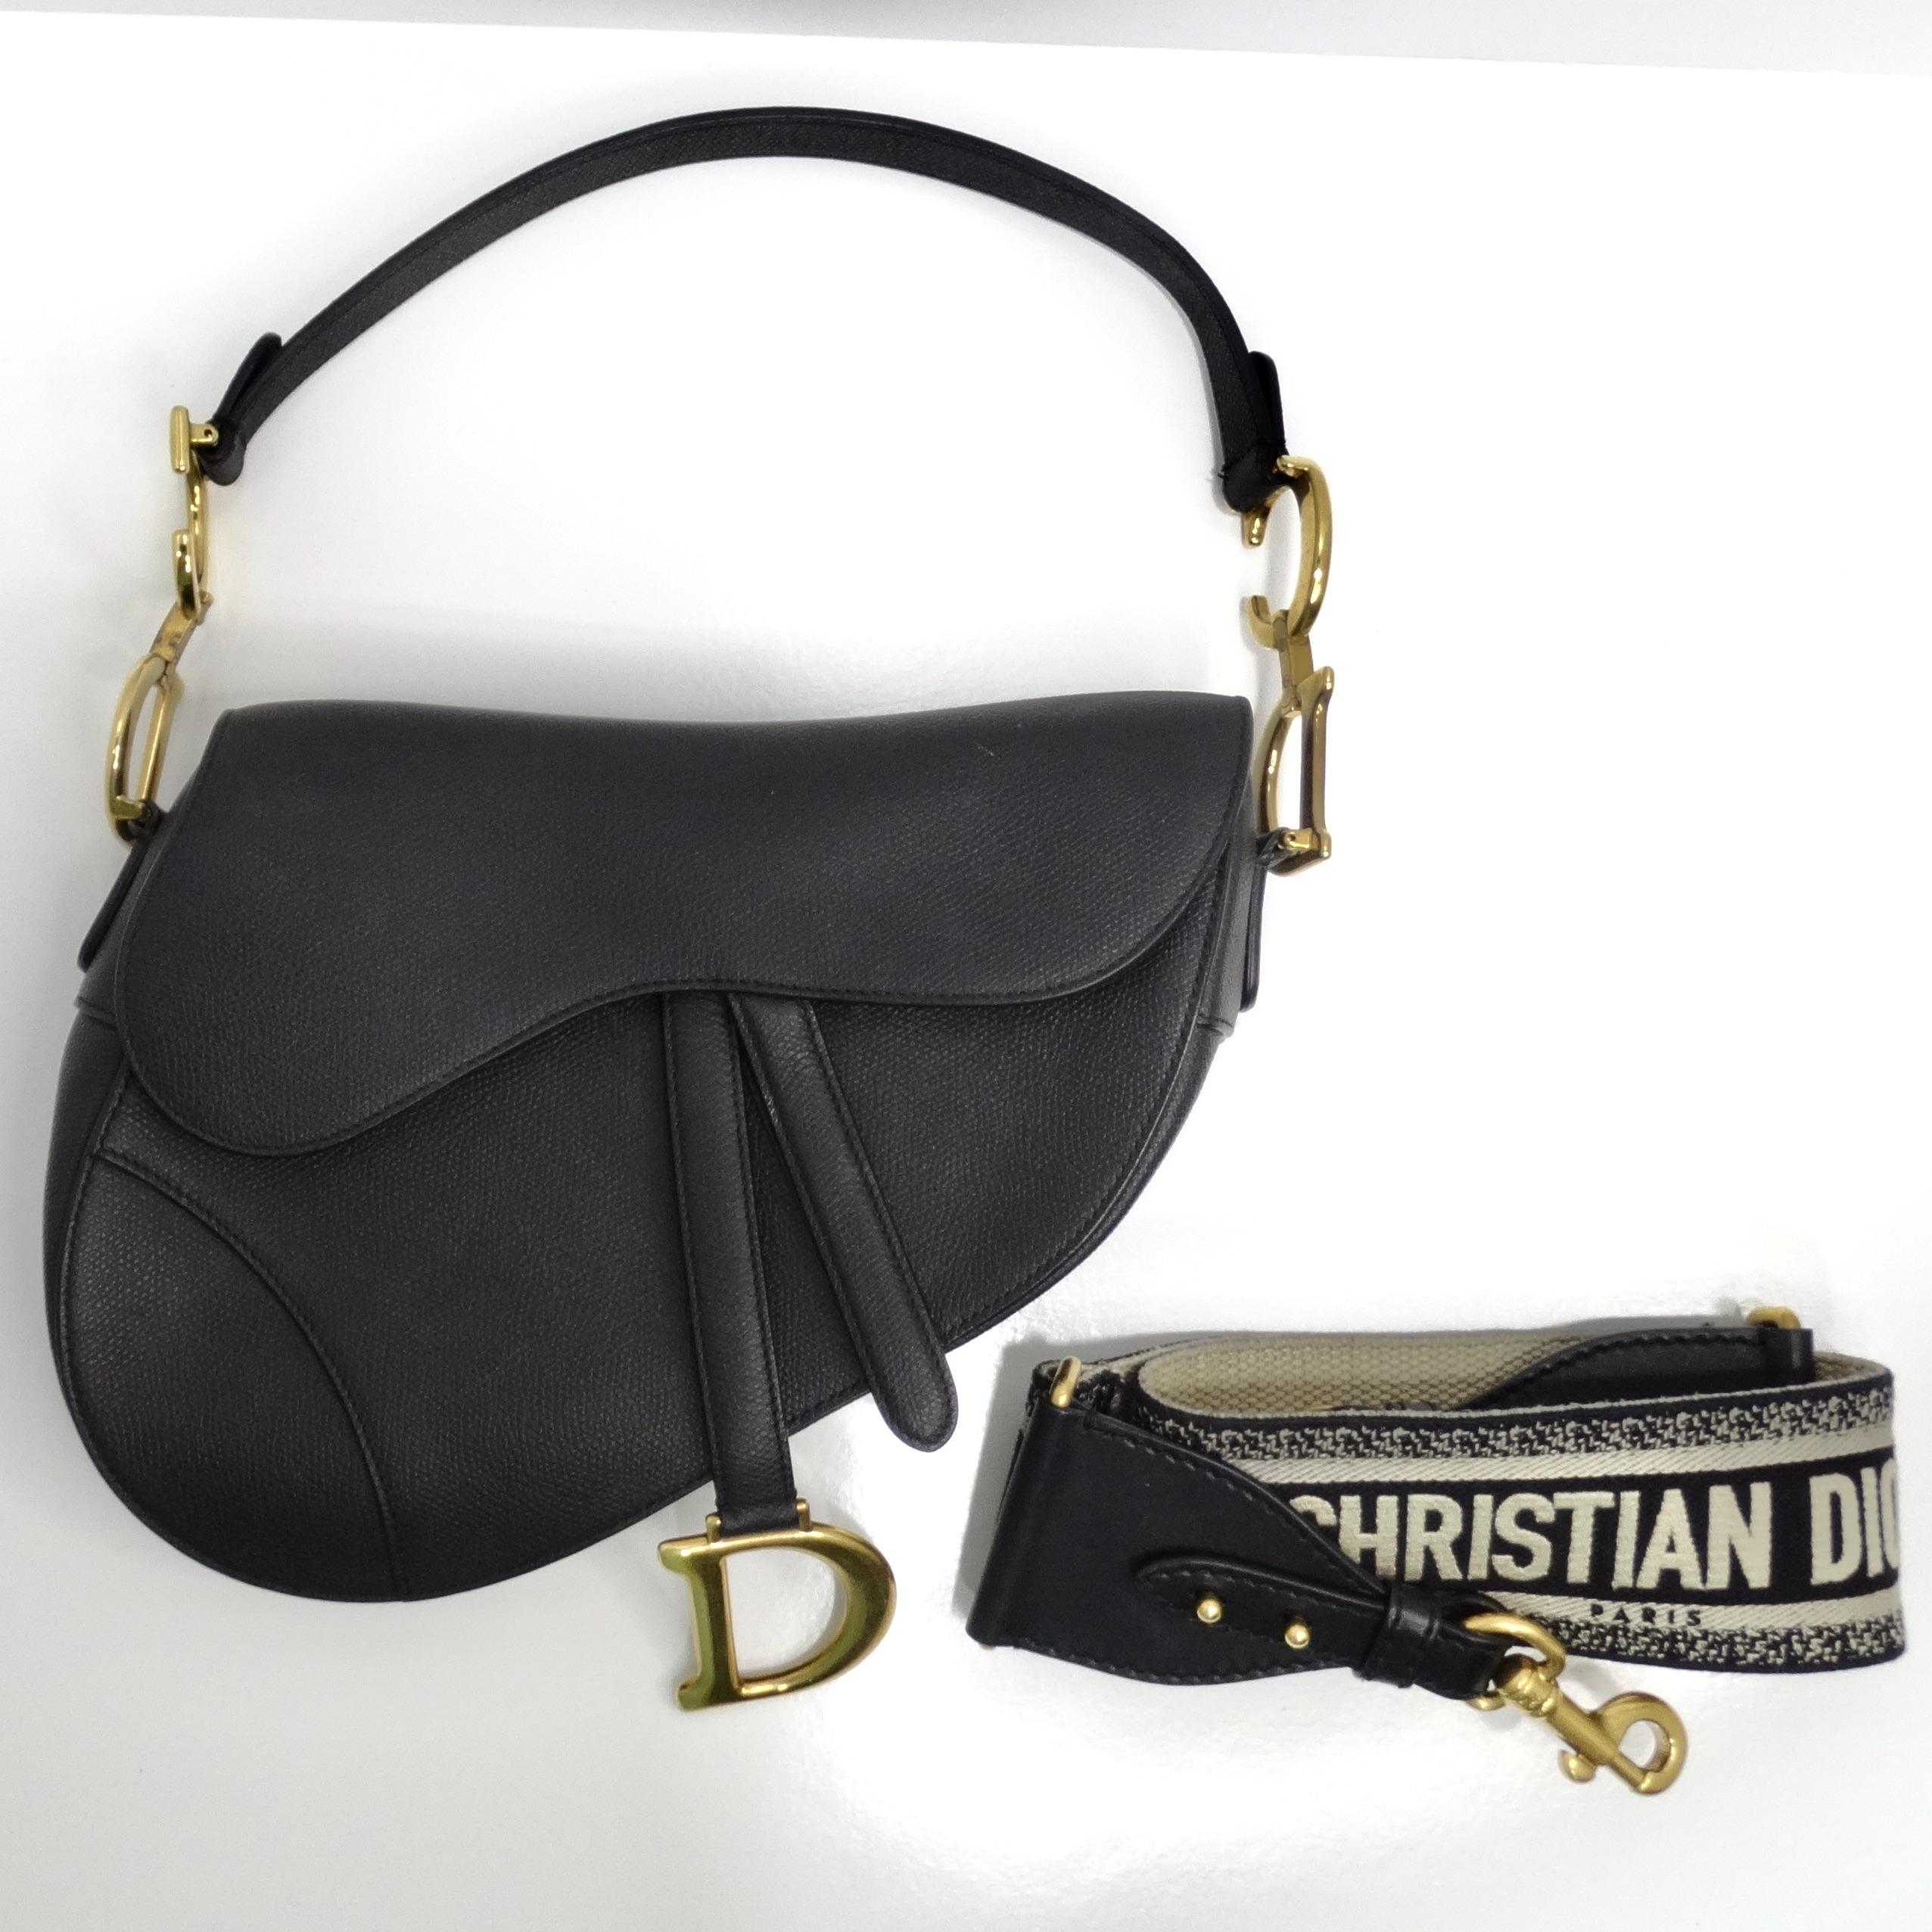 Wir präsentieren die Christian Dior Medium Saddle Bag aus schwarzem Kalbsleder, eine zeitlose Ikone der Luxusmode. Diese aus genarbtem Kalbsleder gefertigte Tasche in der kultigen Sattelform strahlt Raffinesse und Eleganz aus.

Die Tasche ist an den